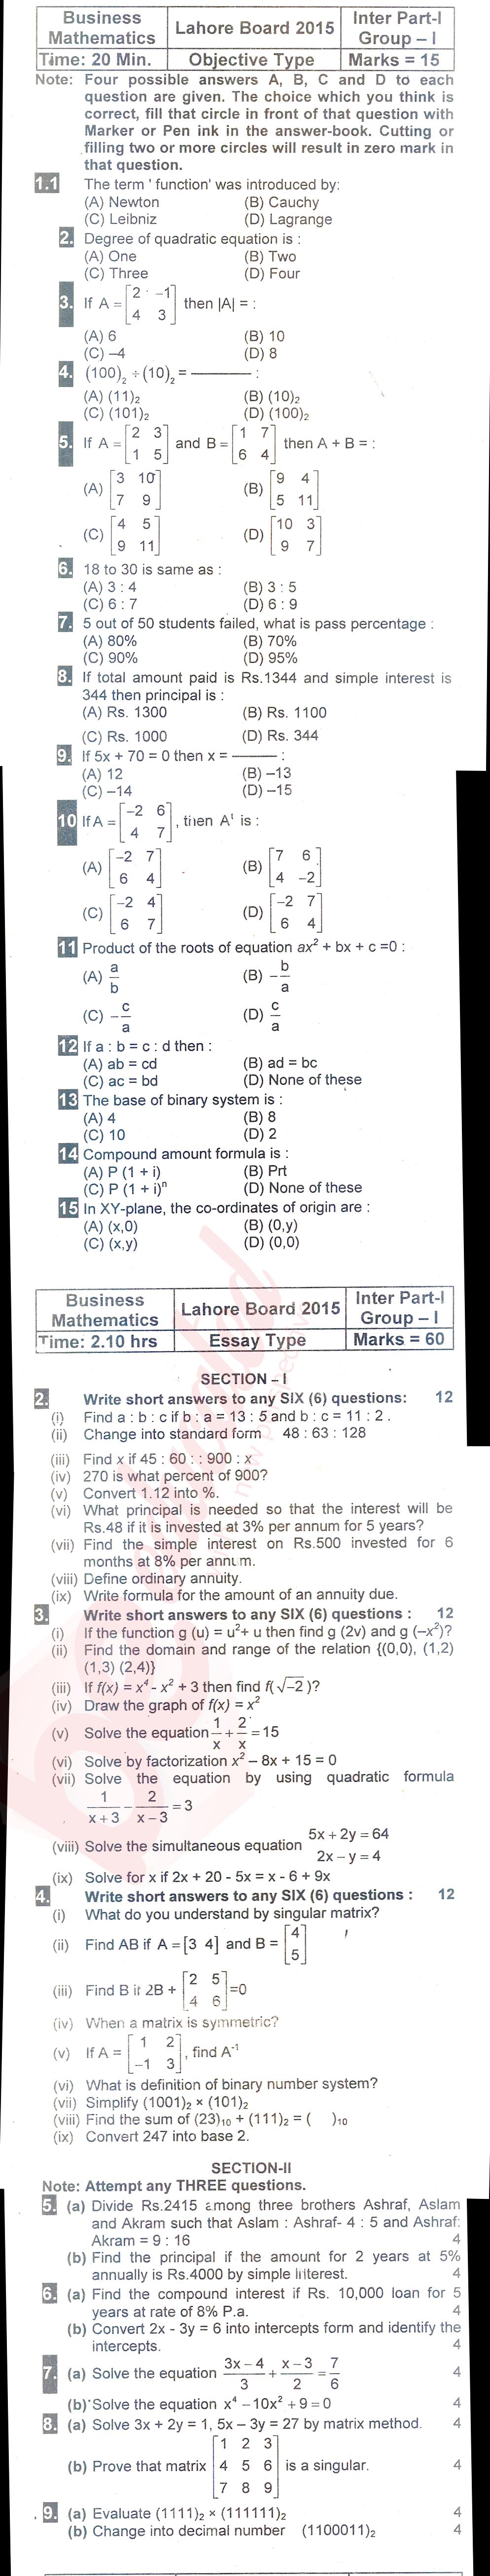 Business Mathematics ICOM Part 1 Past Paper Group 1 BISE Lahore 2015